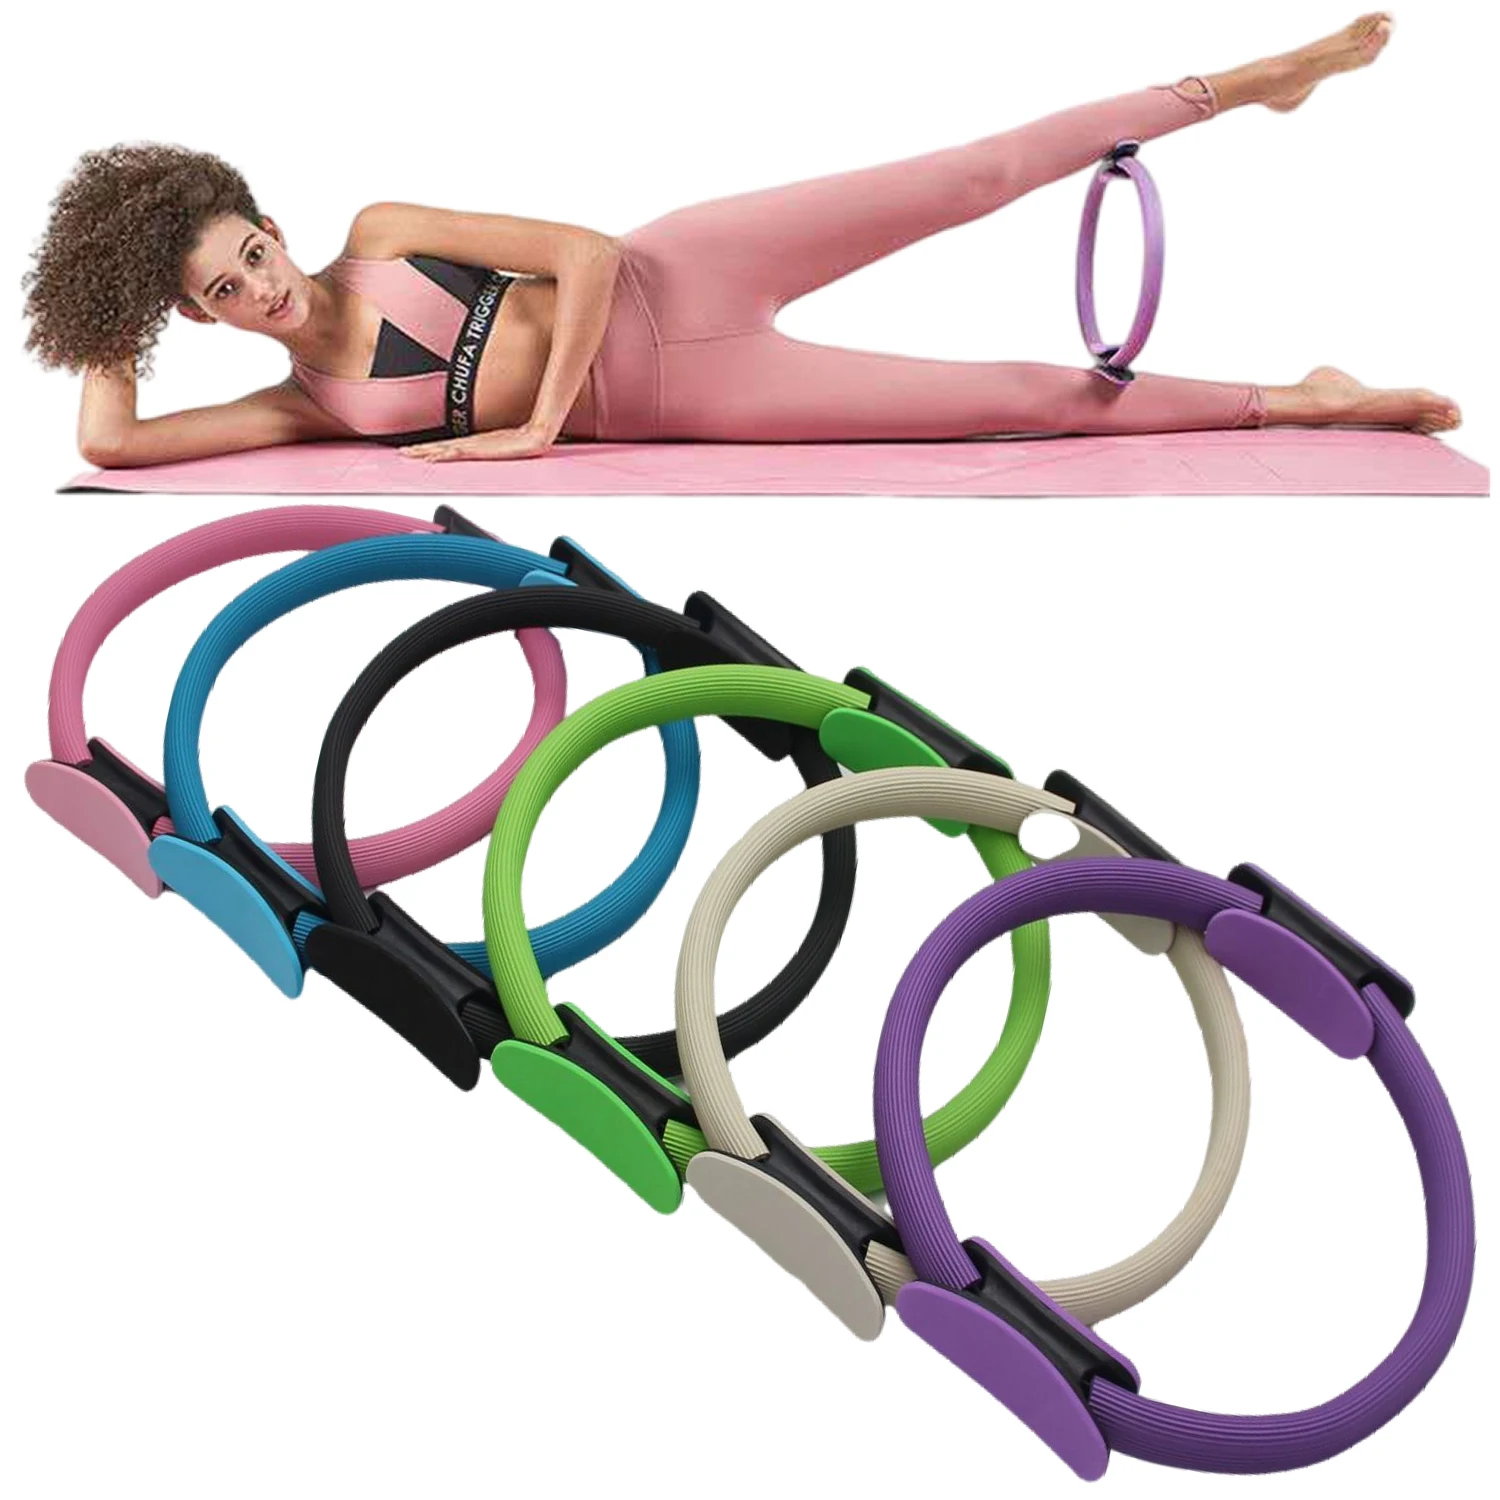 

Круги для йоги, пилатеса, фитнес-кольцо для поддержки весны, тазовые упражнения для женщин, оборудование для формовки для тонизации мышц внутренней мышцы, ног, открытия спины